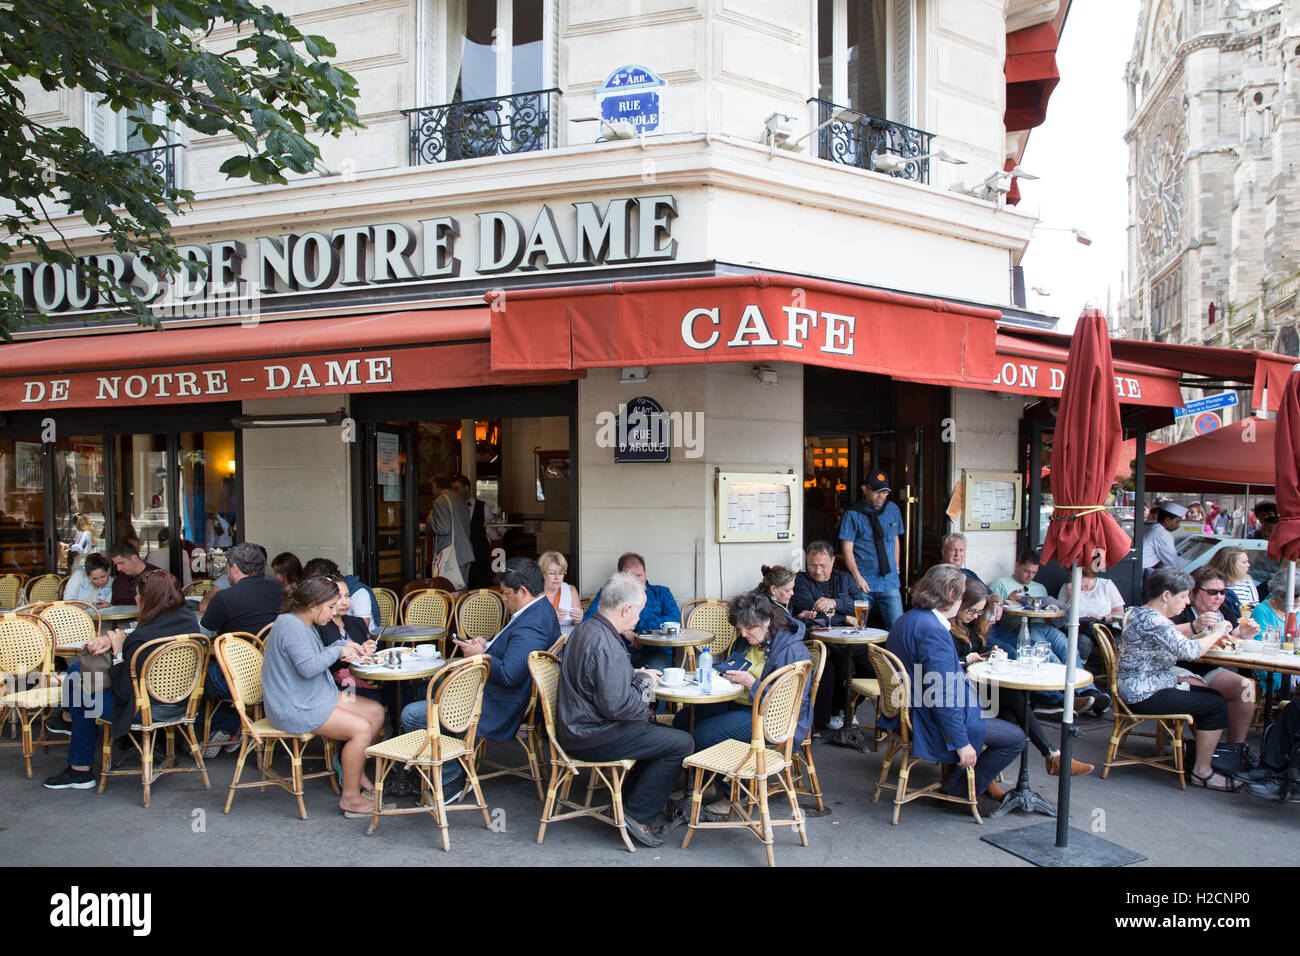 Aux Tours De Notre Dame, cafe/restaurant in Paris, France Stock Photo -  Alamy